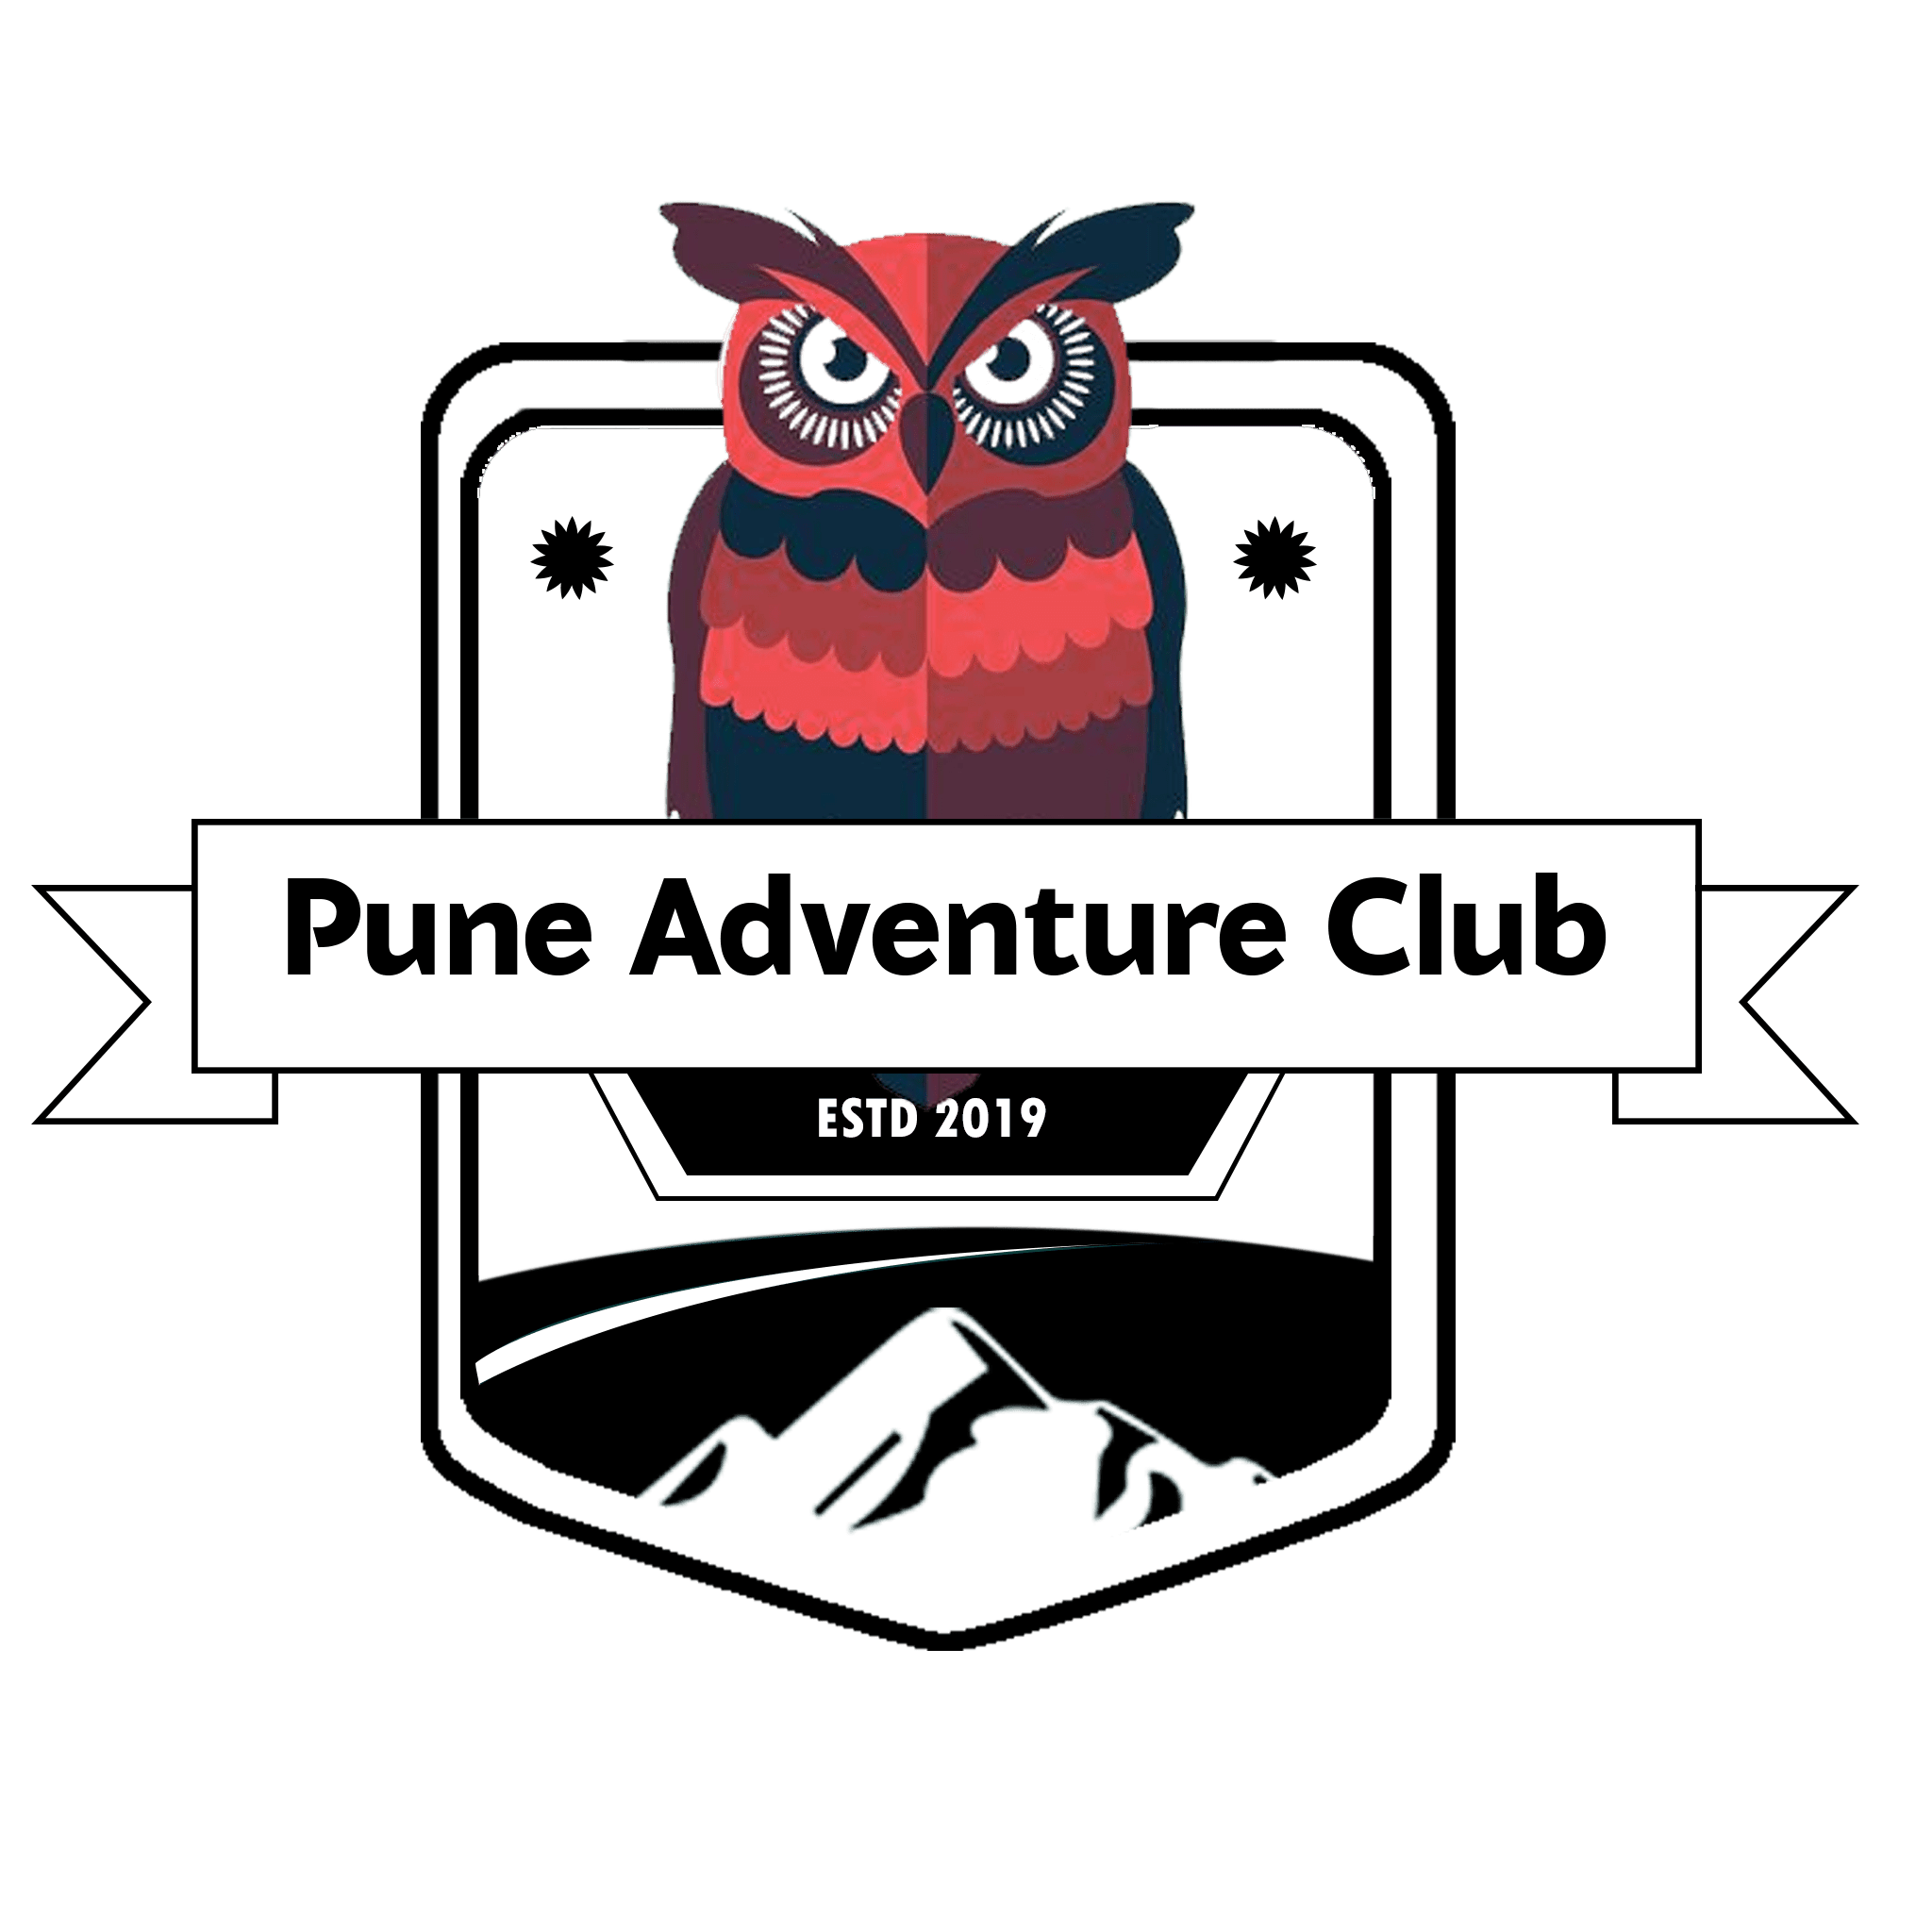 Pune Adventure Club